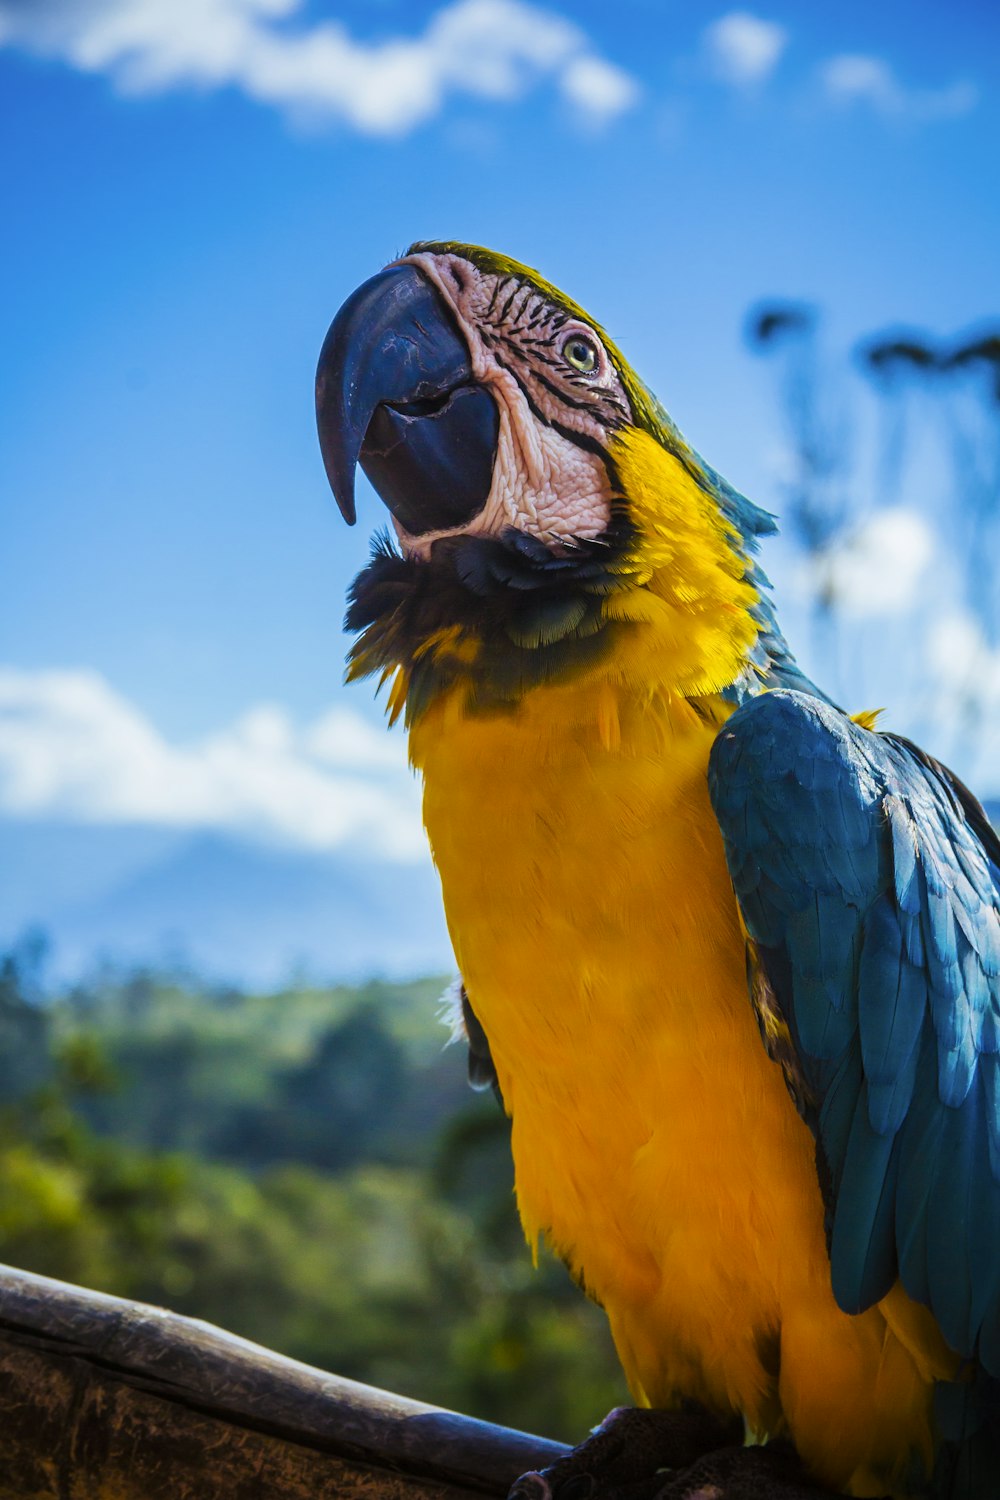 papagaio amarelo e azul empoleirado na madeira